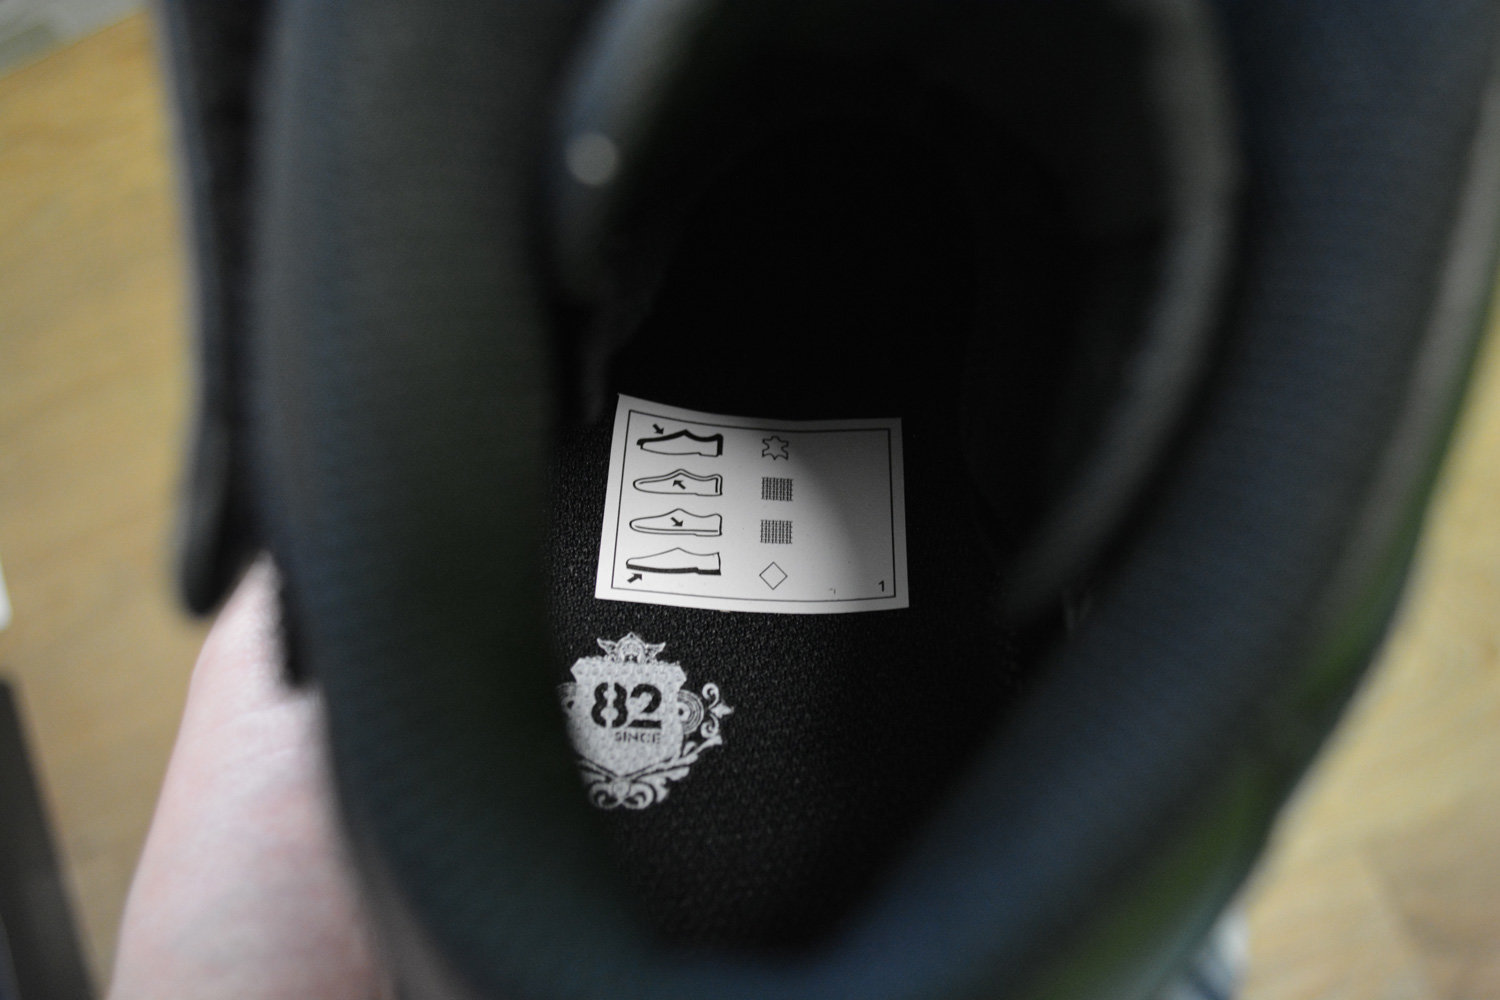 наклейка с указанием материалов внутри оригинальных кроссовок Nike Air Force 1